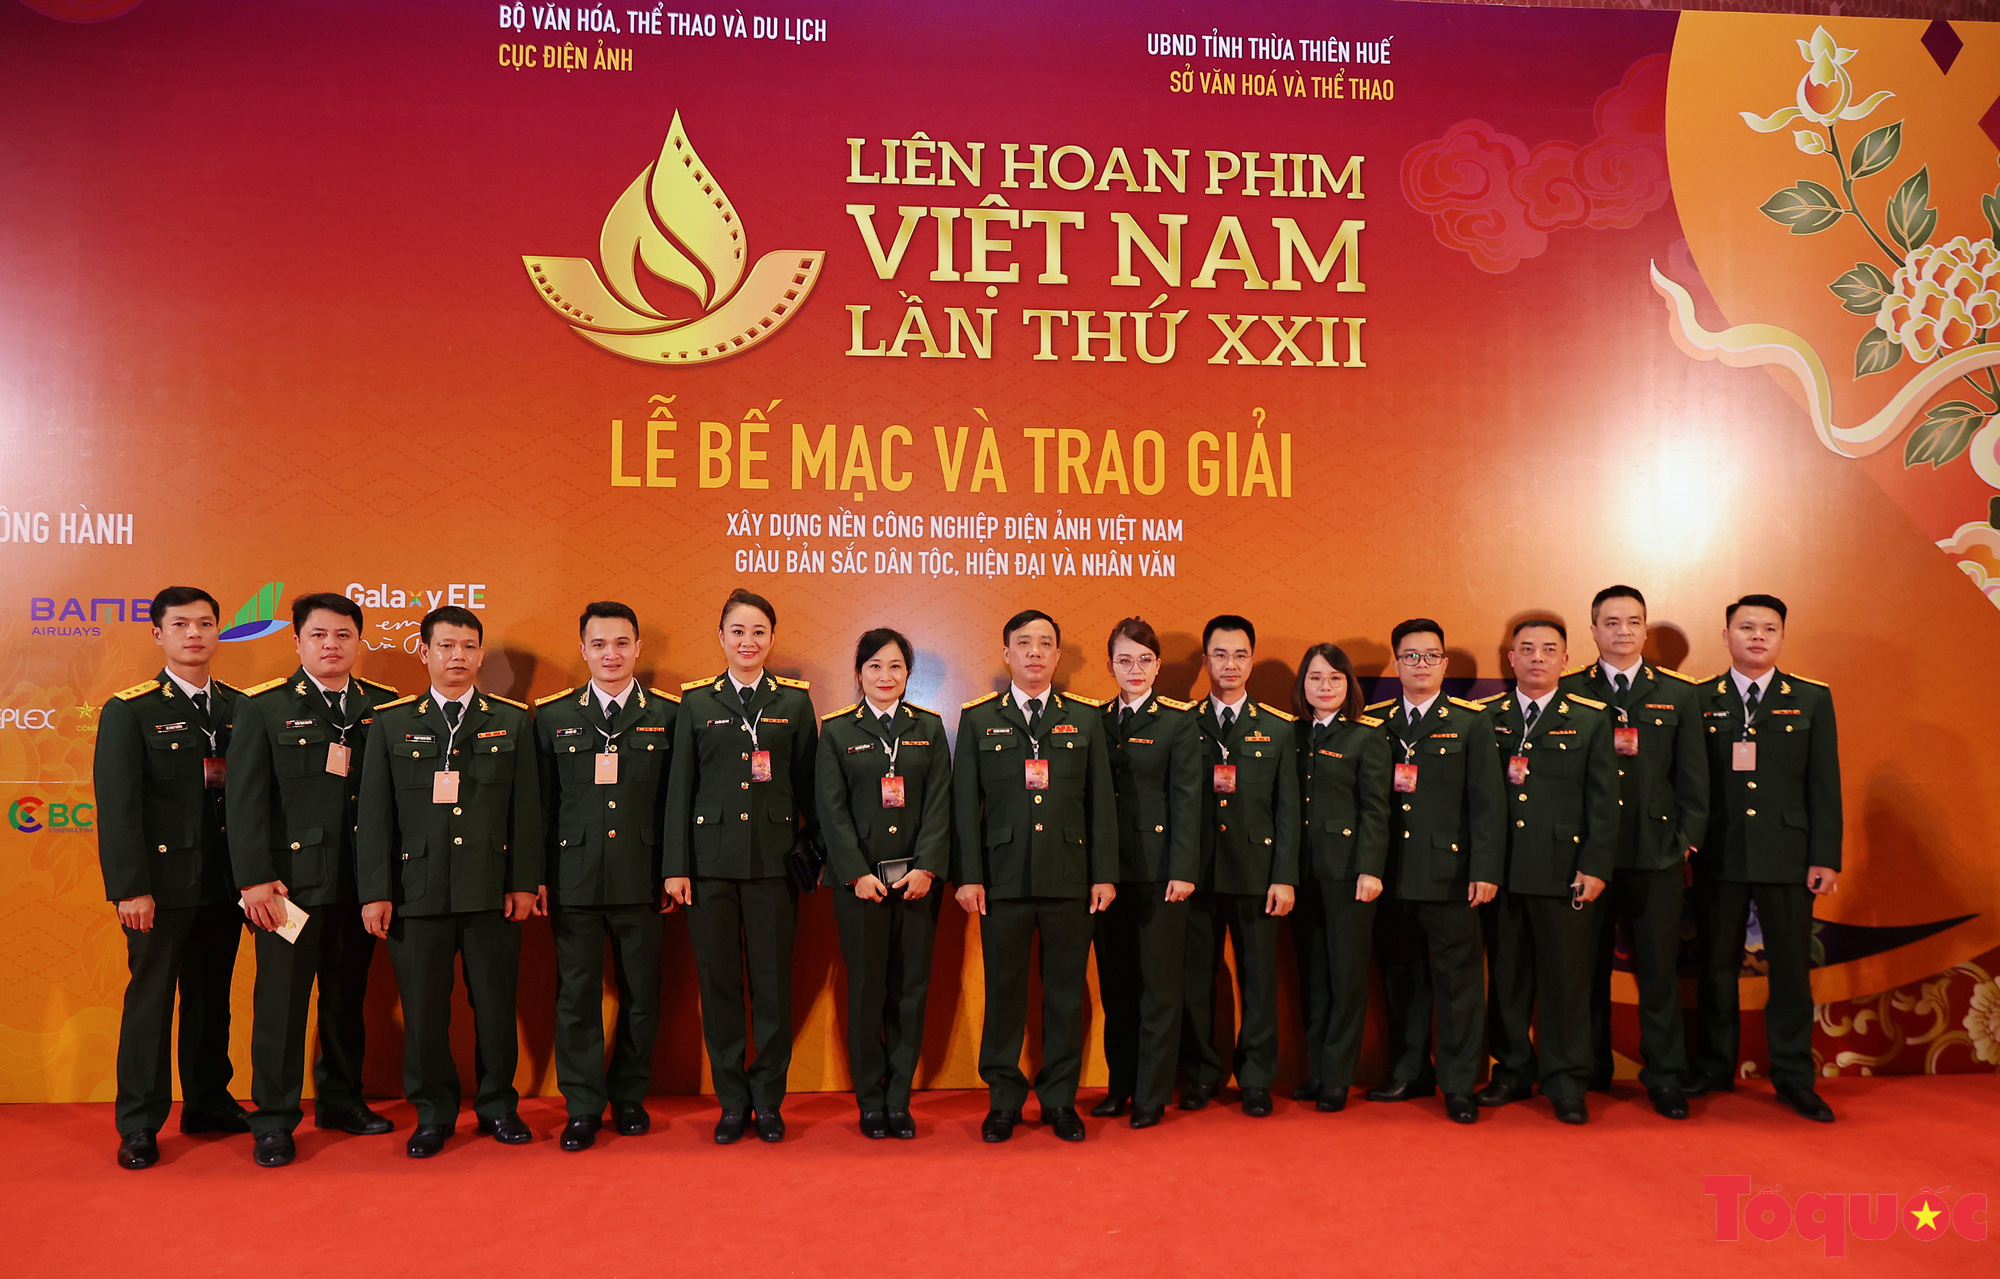 Nghệ sĩ Việt lộng lẫy trên thảm đỏ tại Liên hoan phim Việt Nam lần thứ XXII - Ảnh 11.